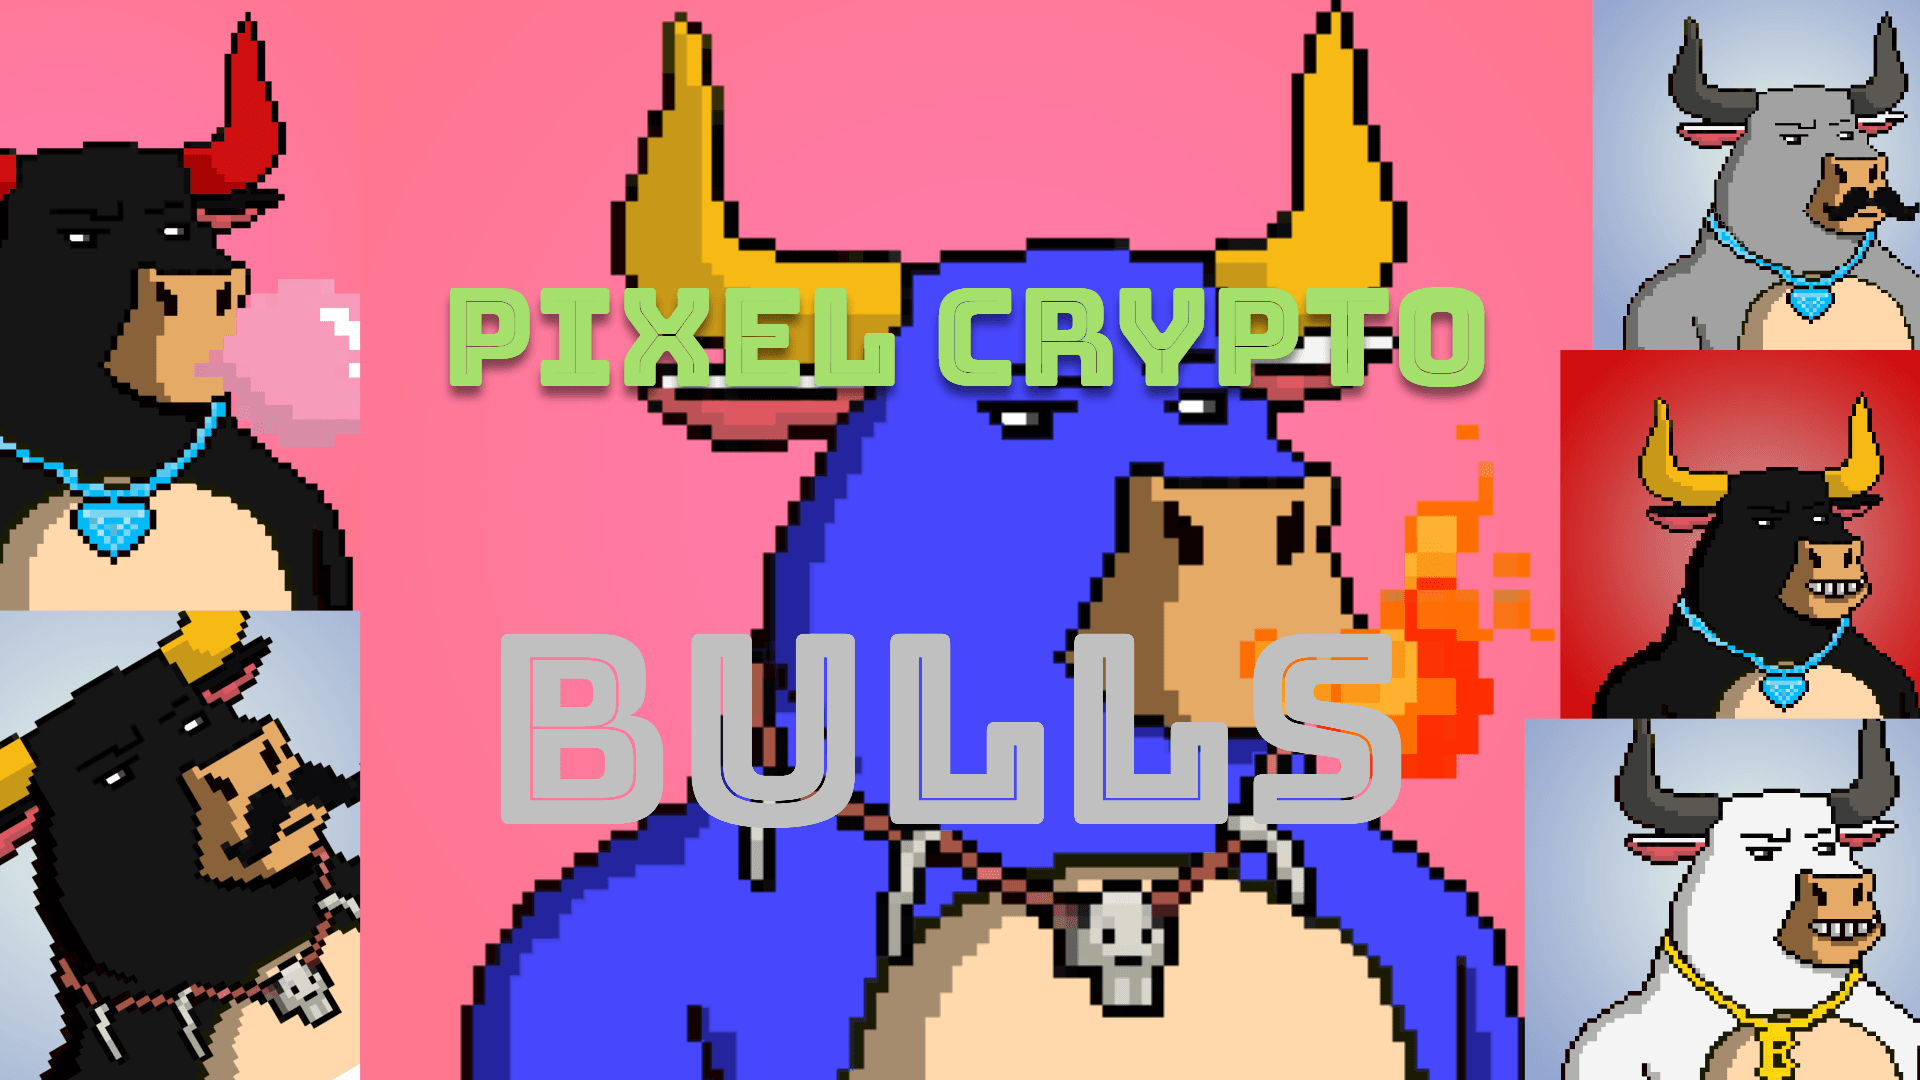 Pixel Crypto Bull Society Co